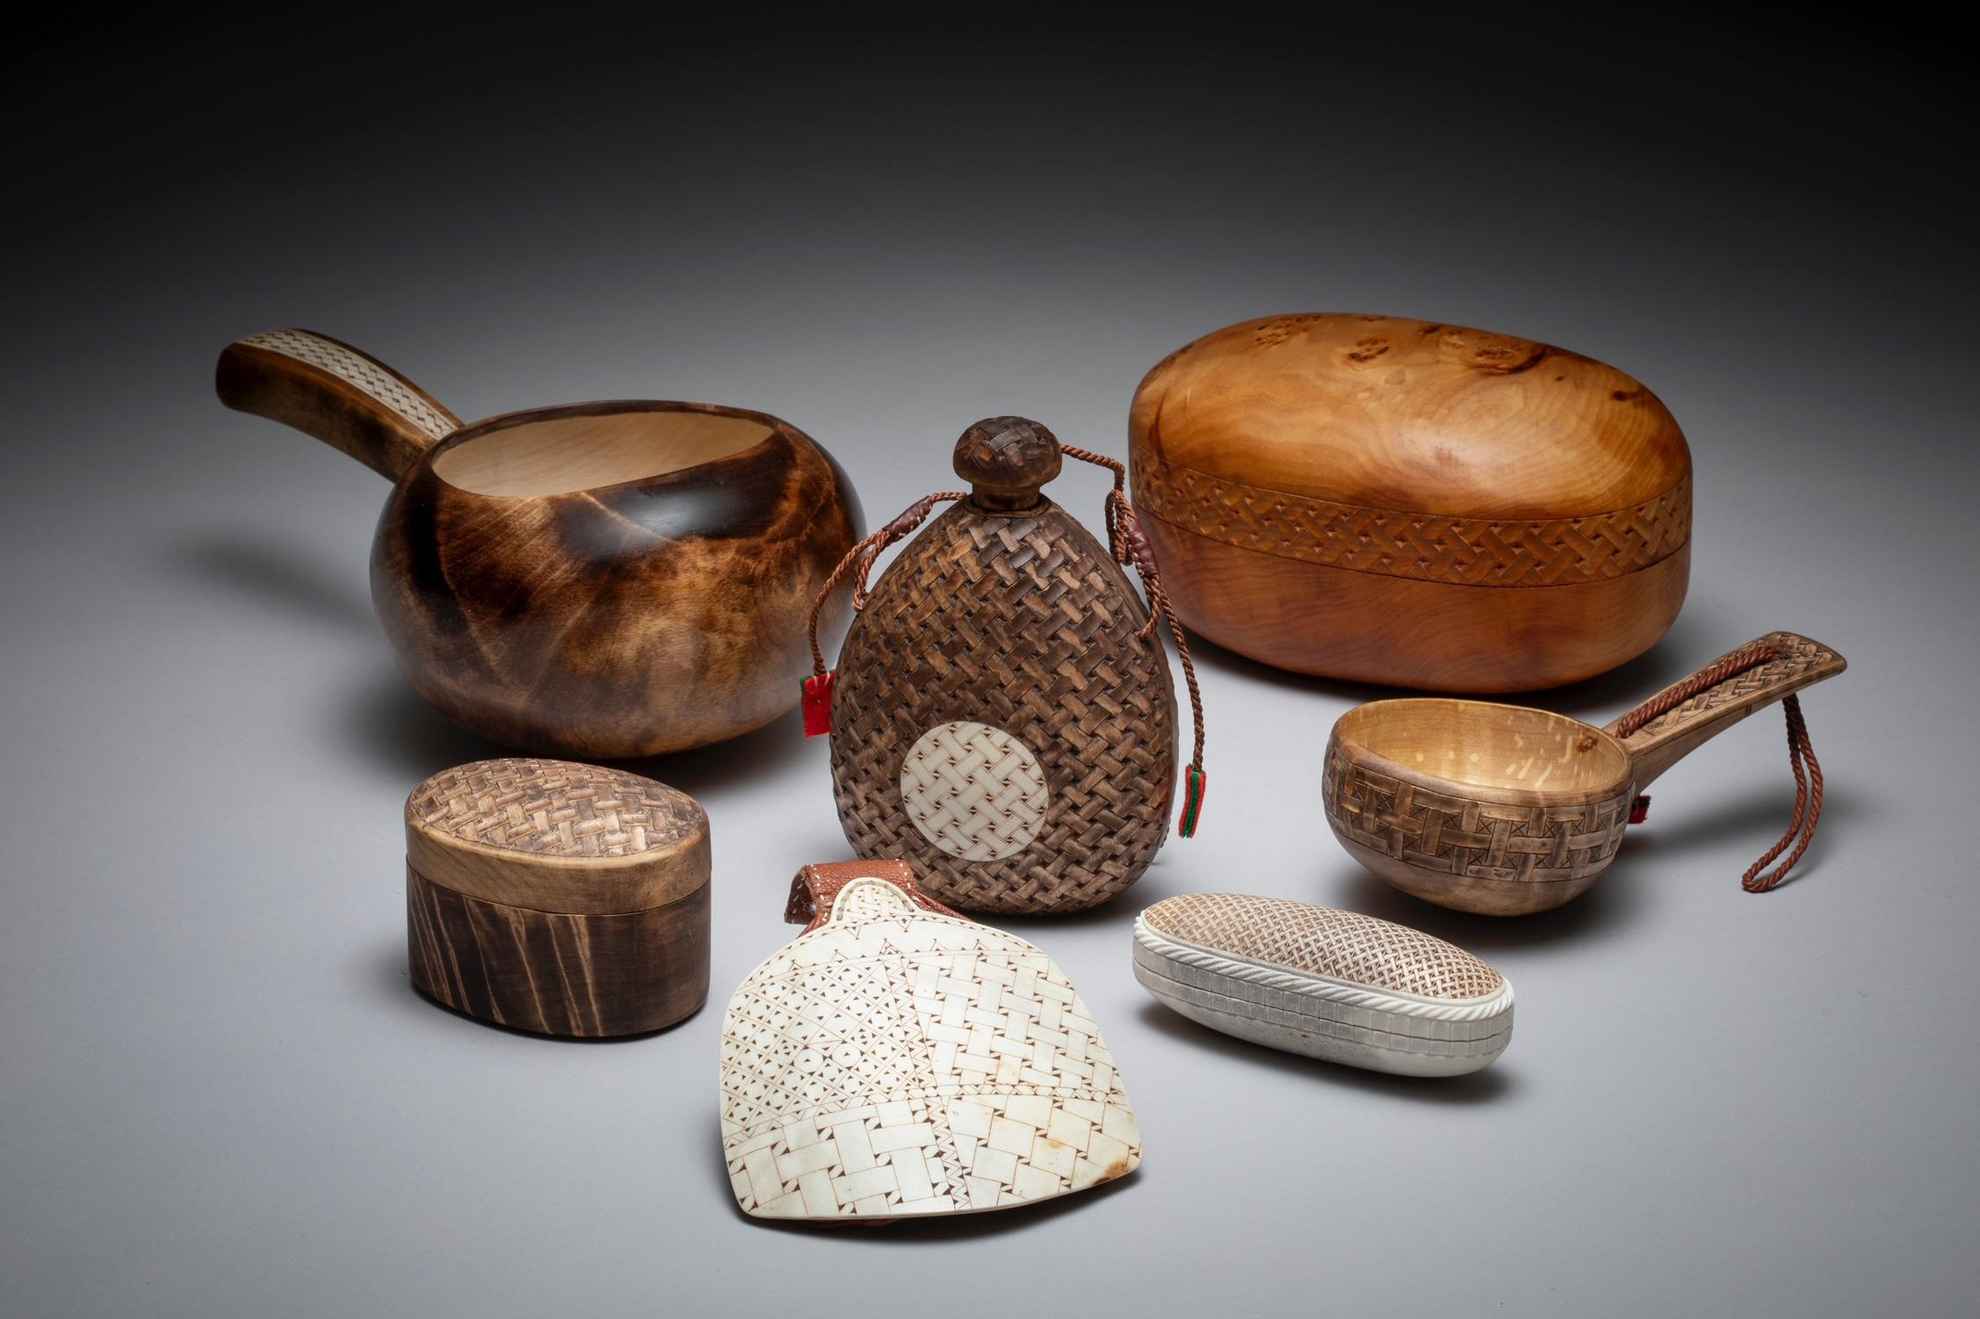 Samisches Kunsthandwerk wie Flaschen, Schalen und Dosen aus Holz und mit Rentierhorn versetzt.